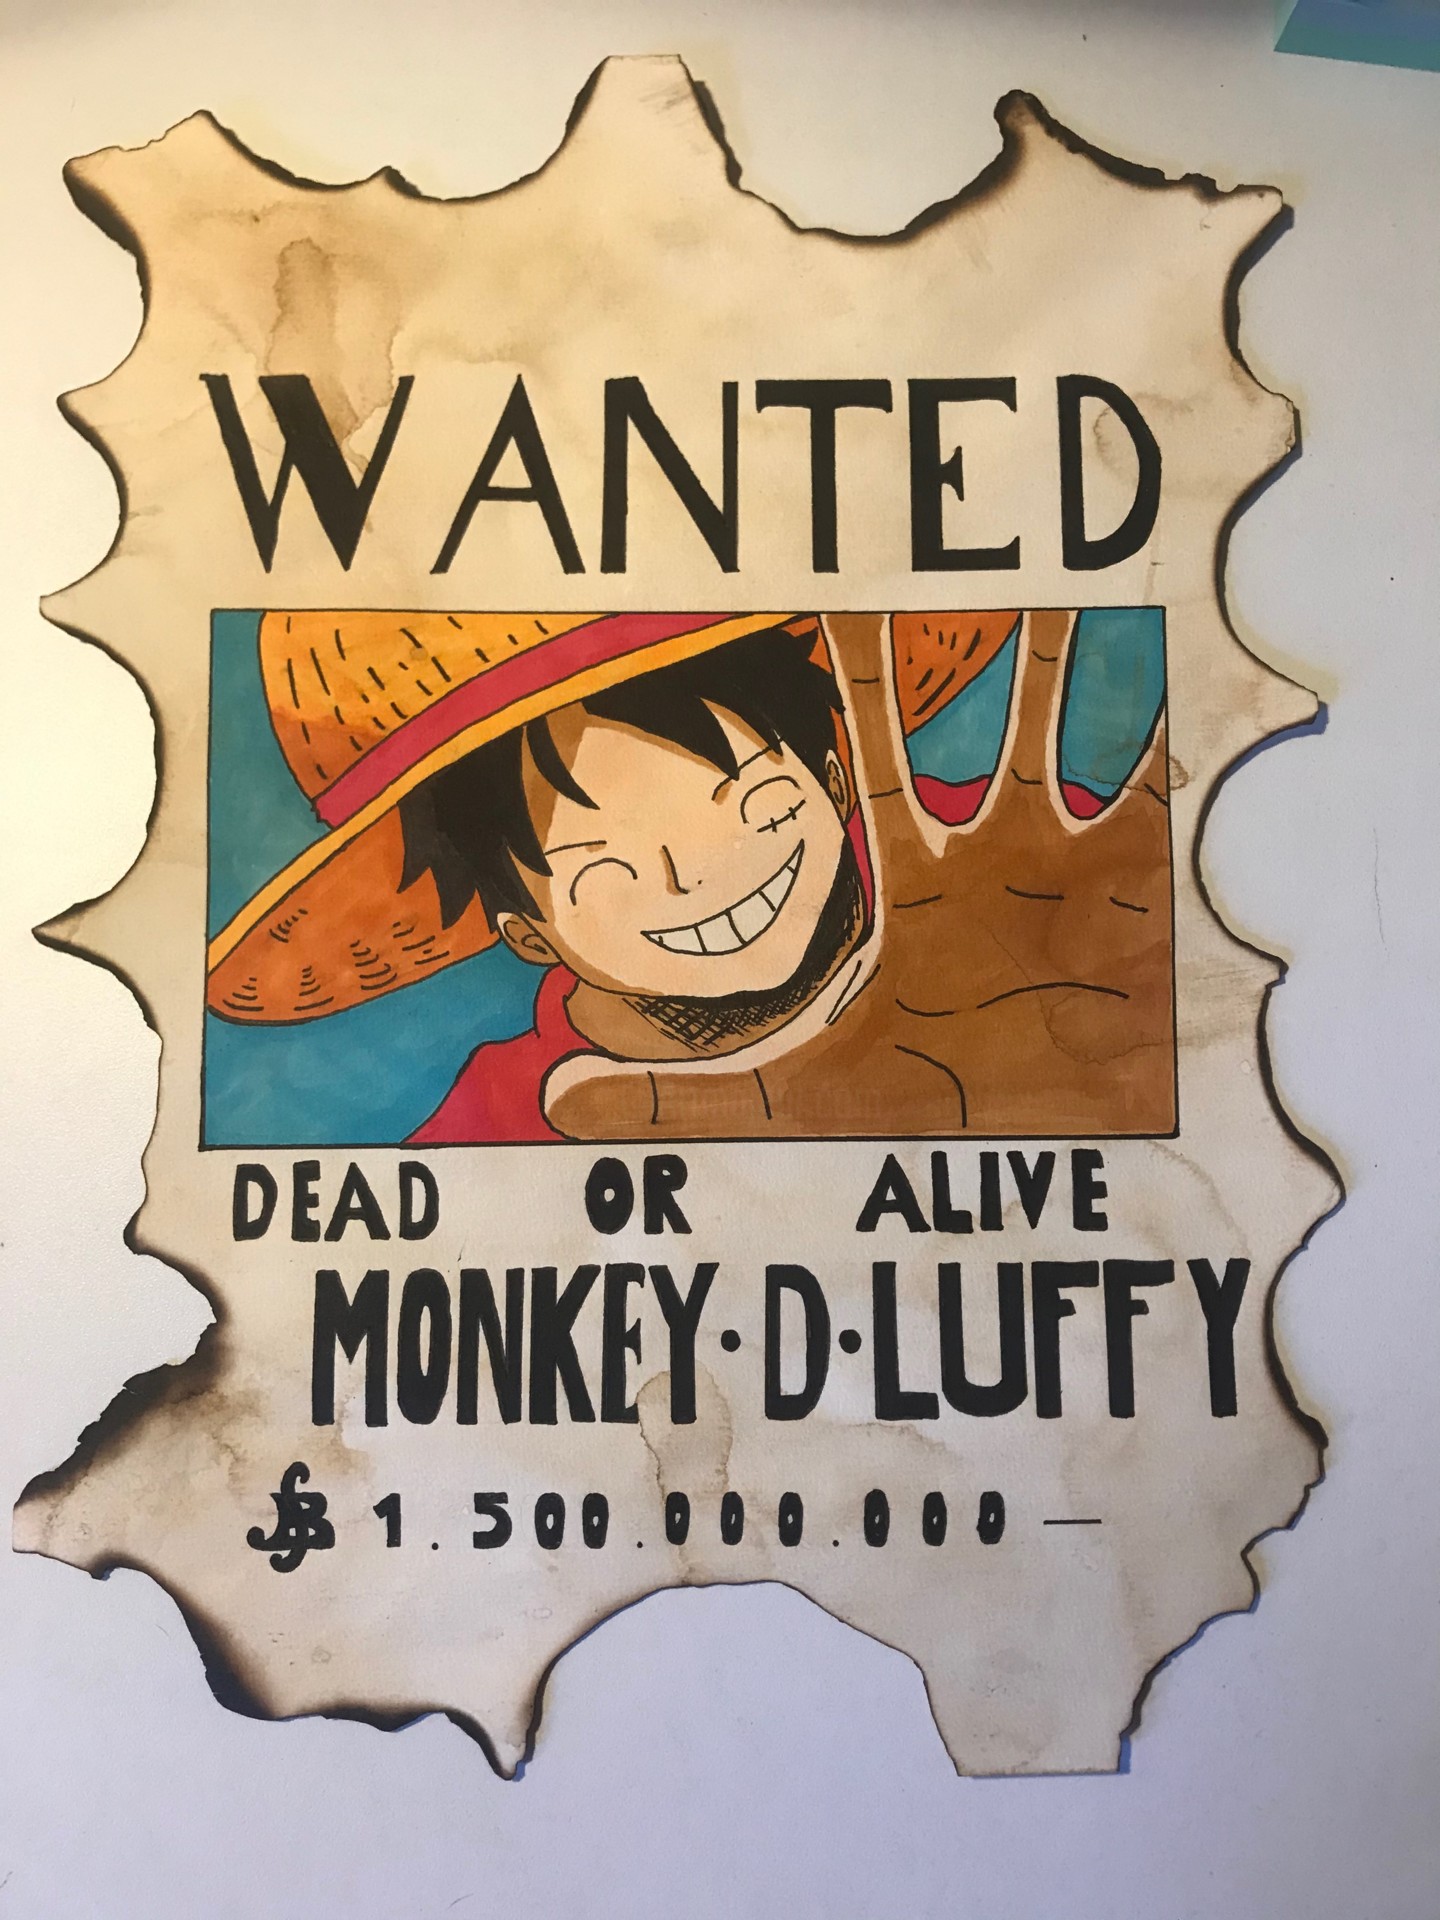 Avis De Recherche Monkey.d Luffy One Pie, Drawing by Thomson